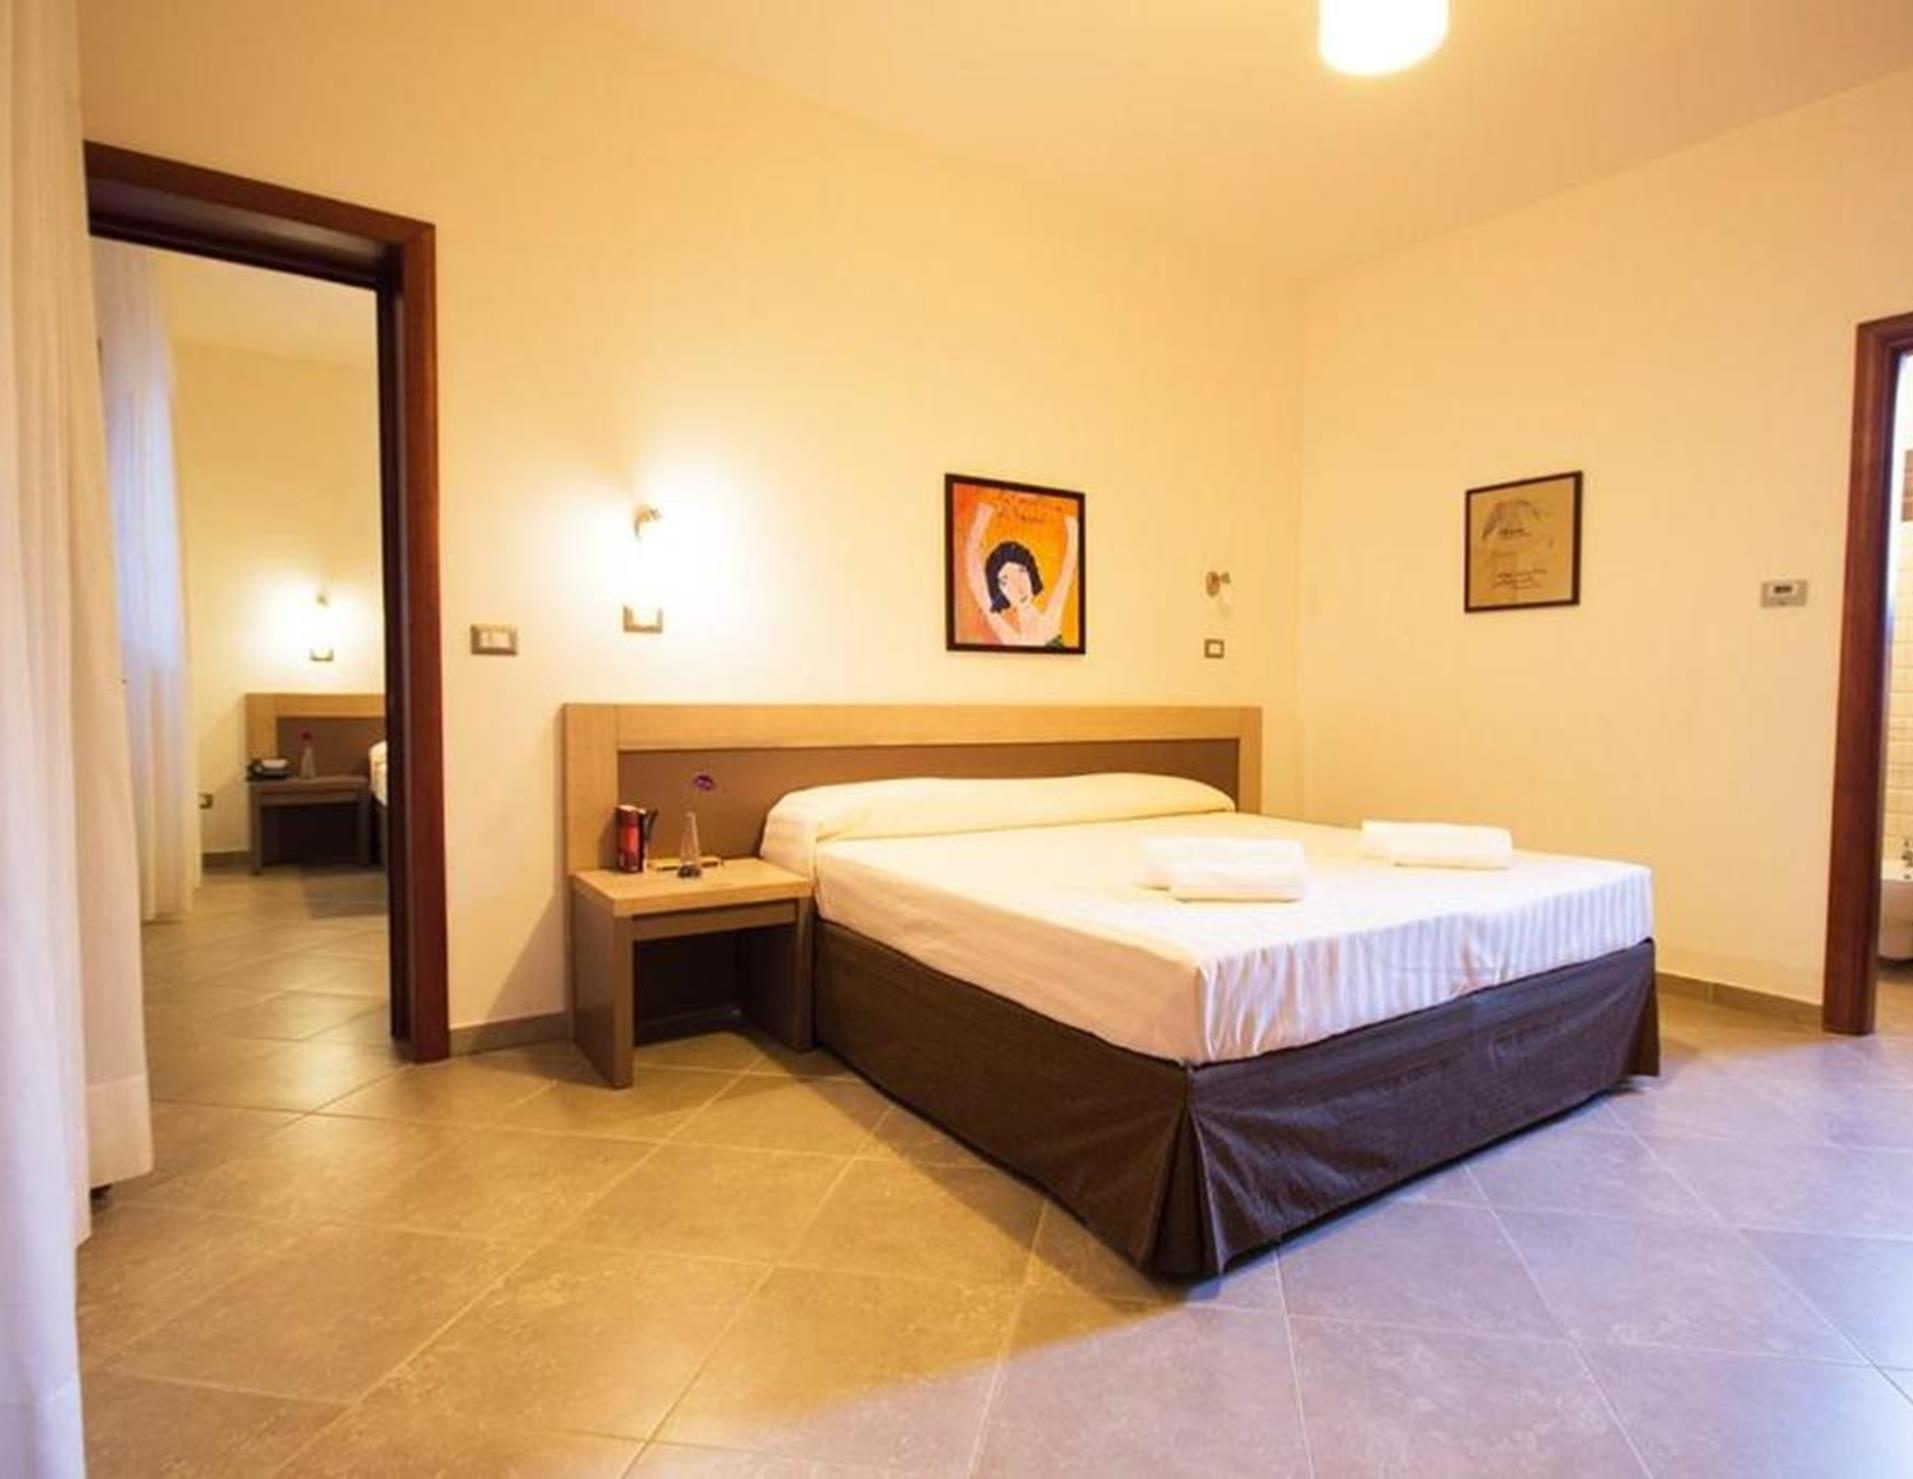 Volito Hotel - Room 1